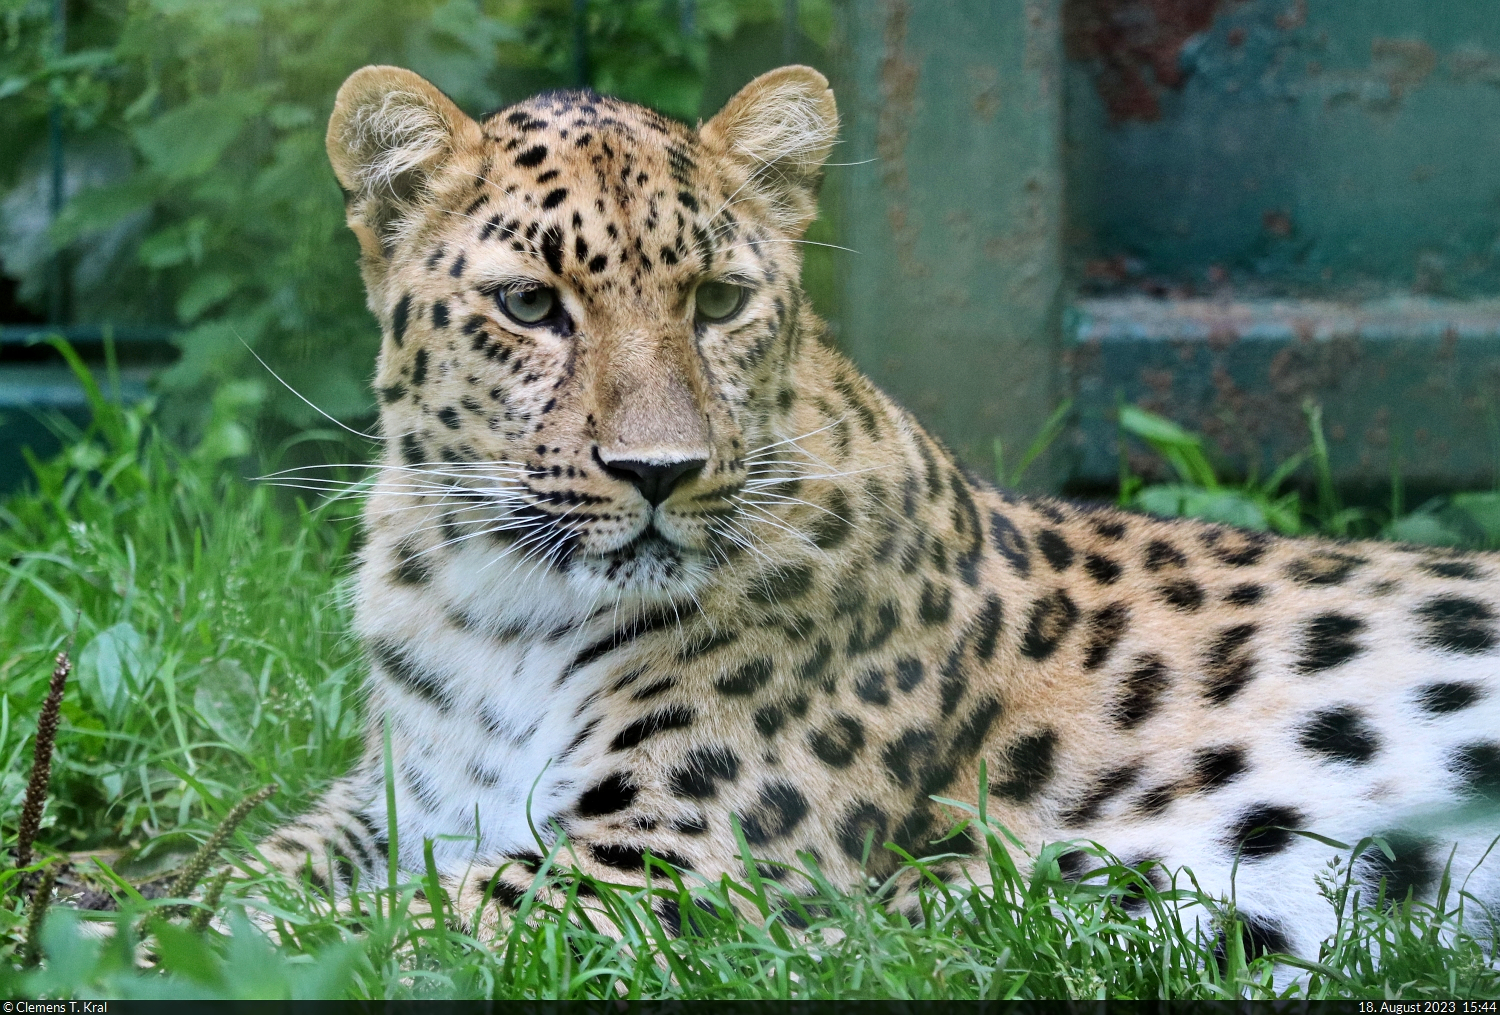 Eine der beiden Amurleopardinnen (Panthera pardus orientalis) aus einem Zoo in Südfrankreich, die zeitweilig im Zoo Aschersleben untergebracht sind. Dieser beteiligt sich im europäischen Zuchterhaltungsprogramm für Amurleoparden. Der sonst hier anzutreffende Leopard ist deshalb gerade im Zoo Warschau.

🕓 18.8.2023 | 15:44 Uhr